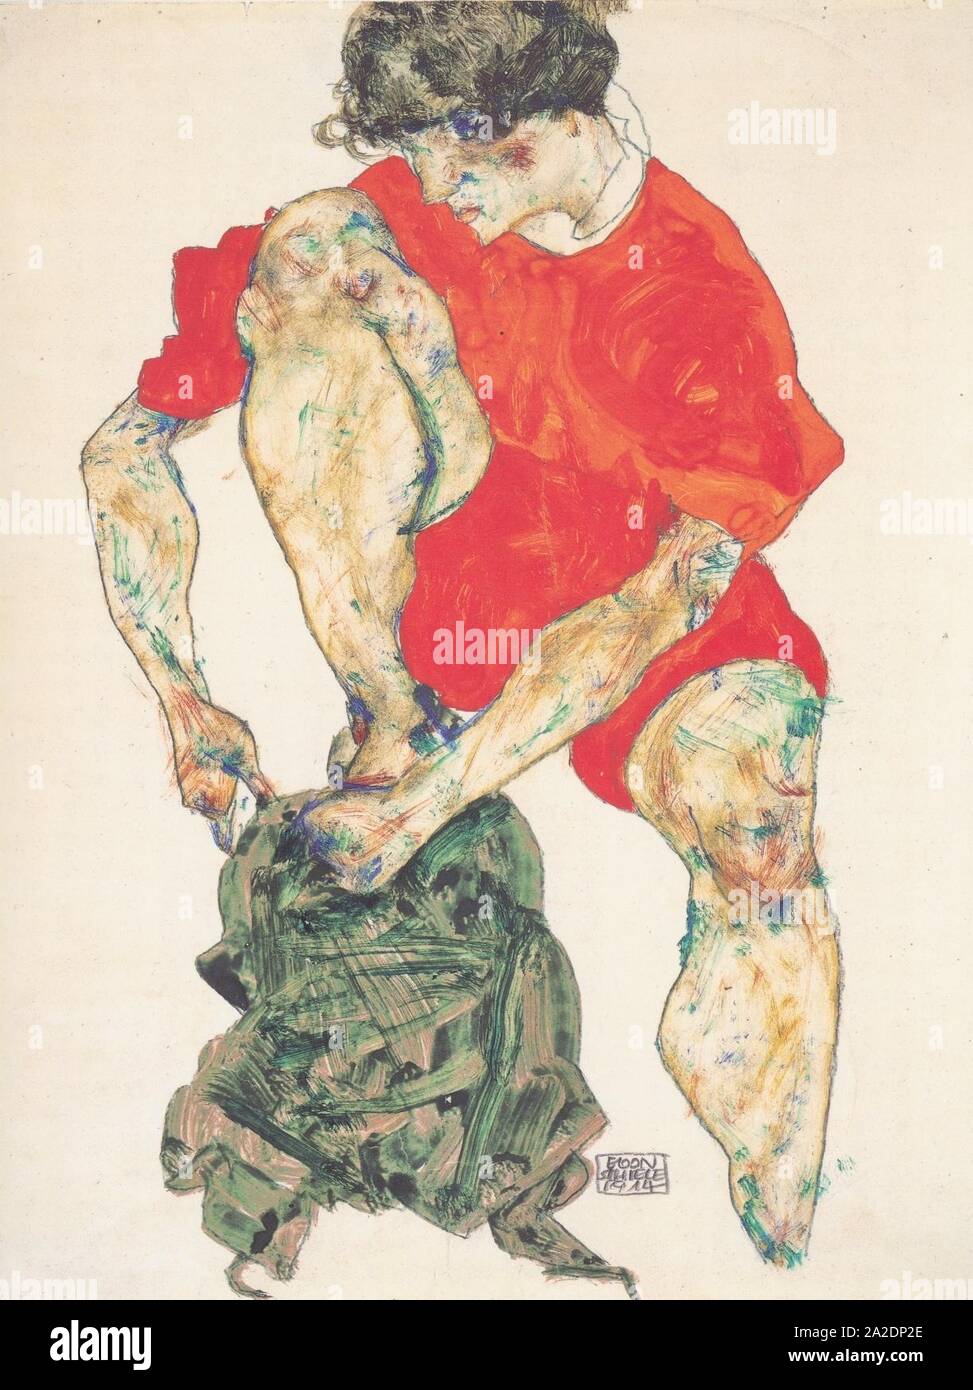 Egon Schiele - Weibliches Modell in rotem Gewand - 1914. Stock Photo